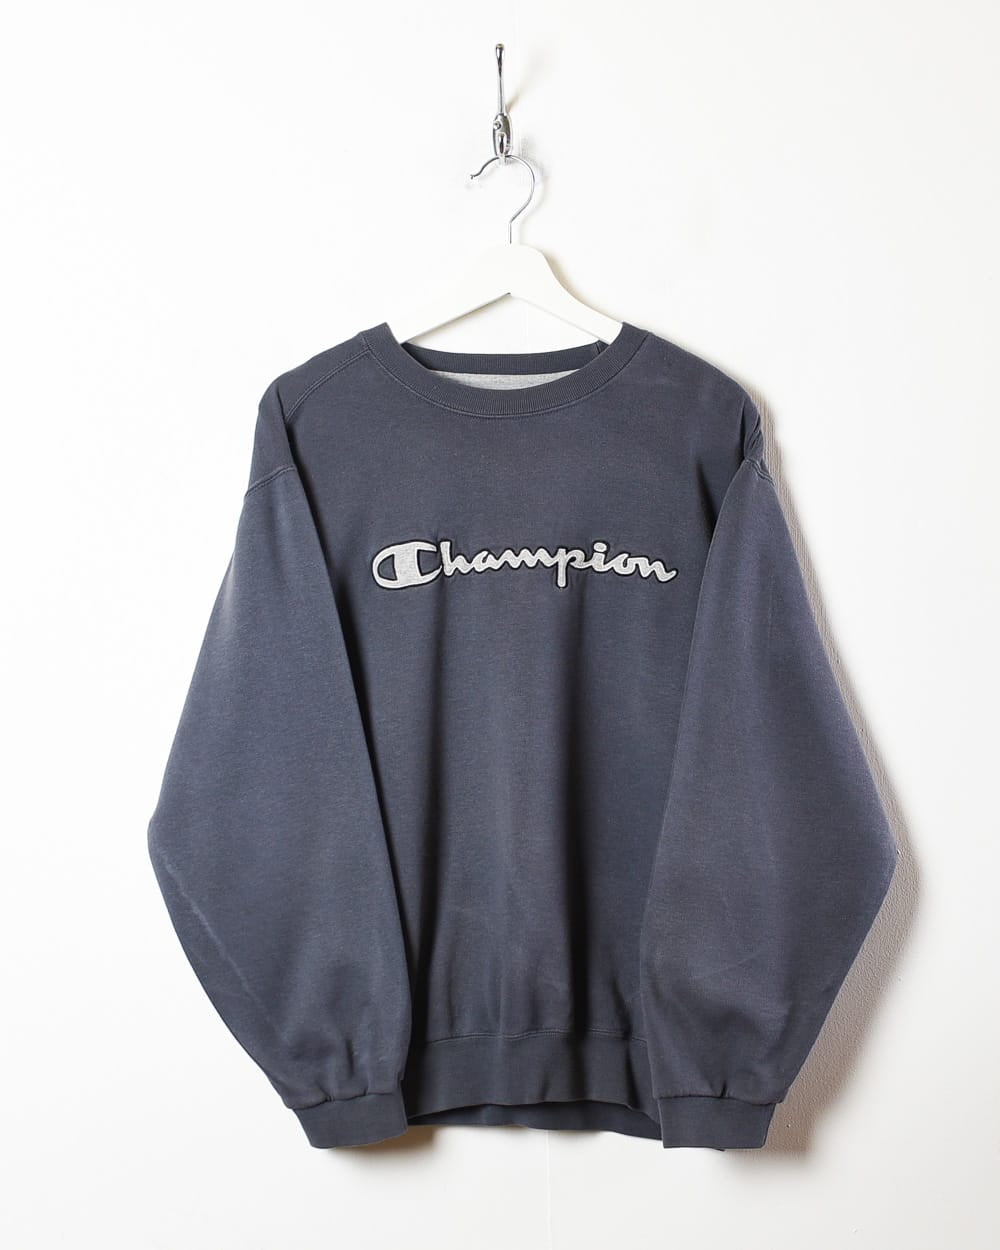 Grey Champion Sweatshirt - Medium